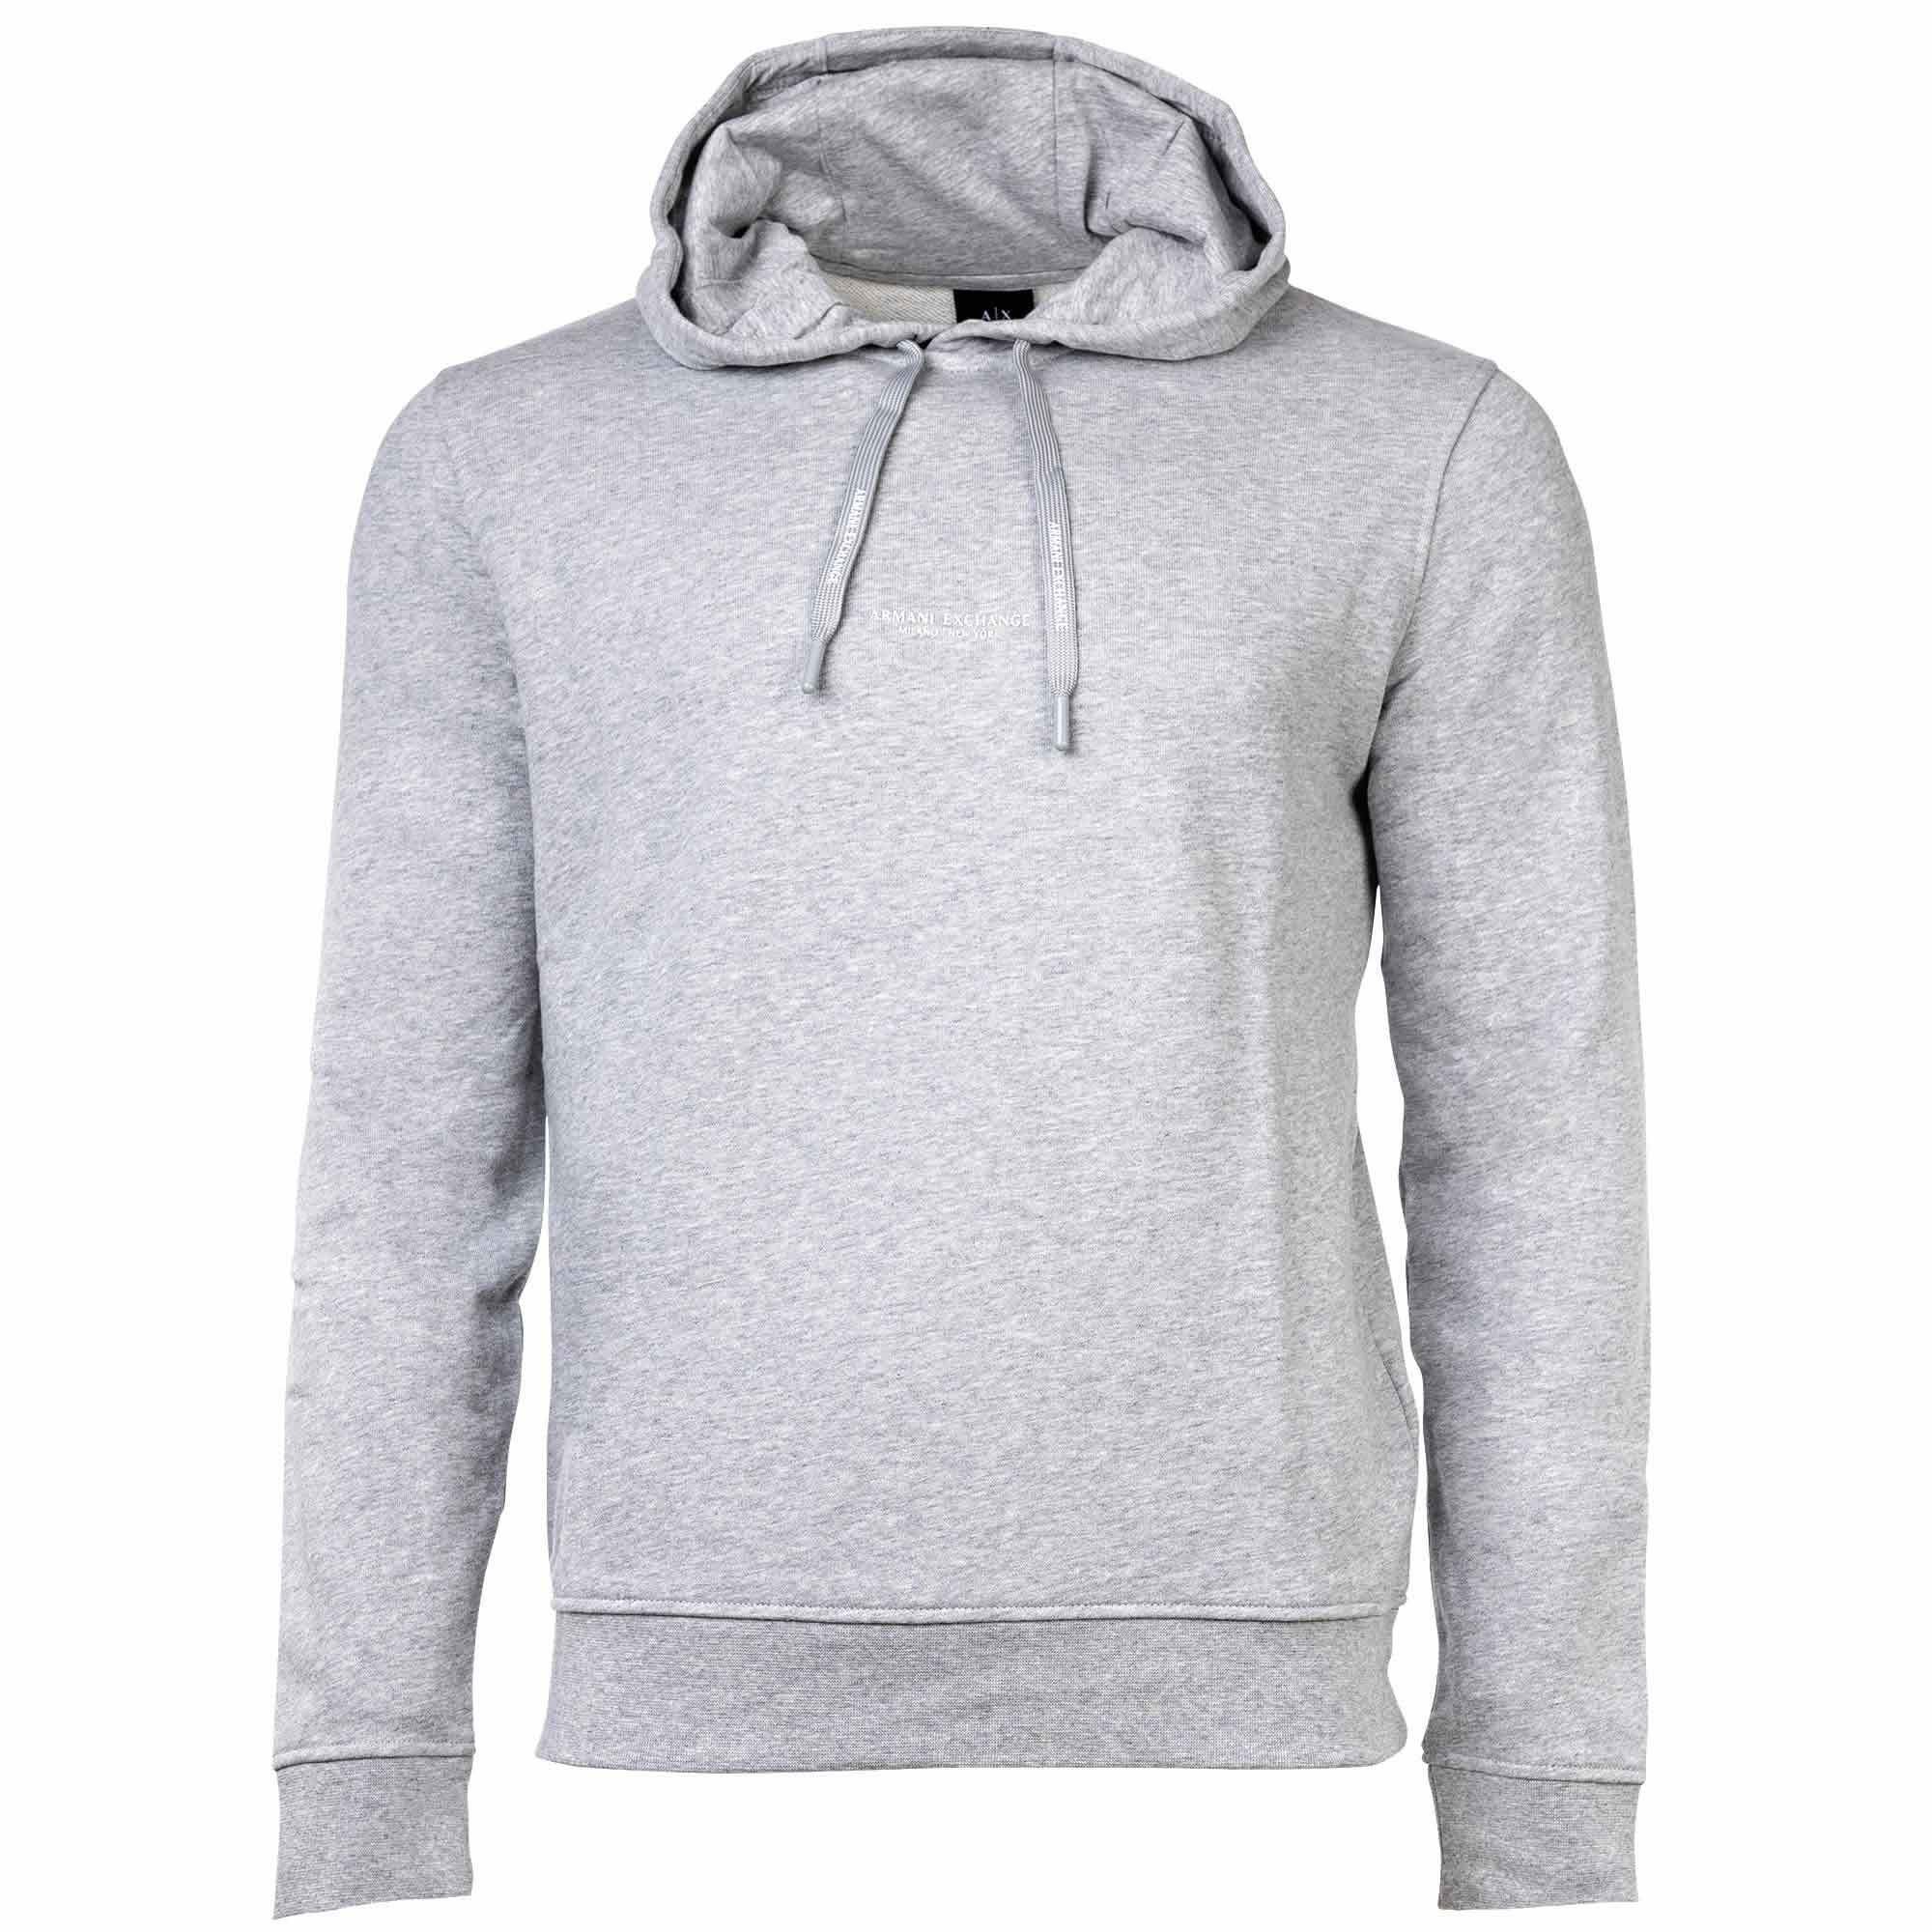 ARMANI EXCHANGE Sweatshirt Herren Sweatshirt - Hoodie, Logo, Kapuze, uni Grau meliert